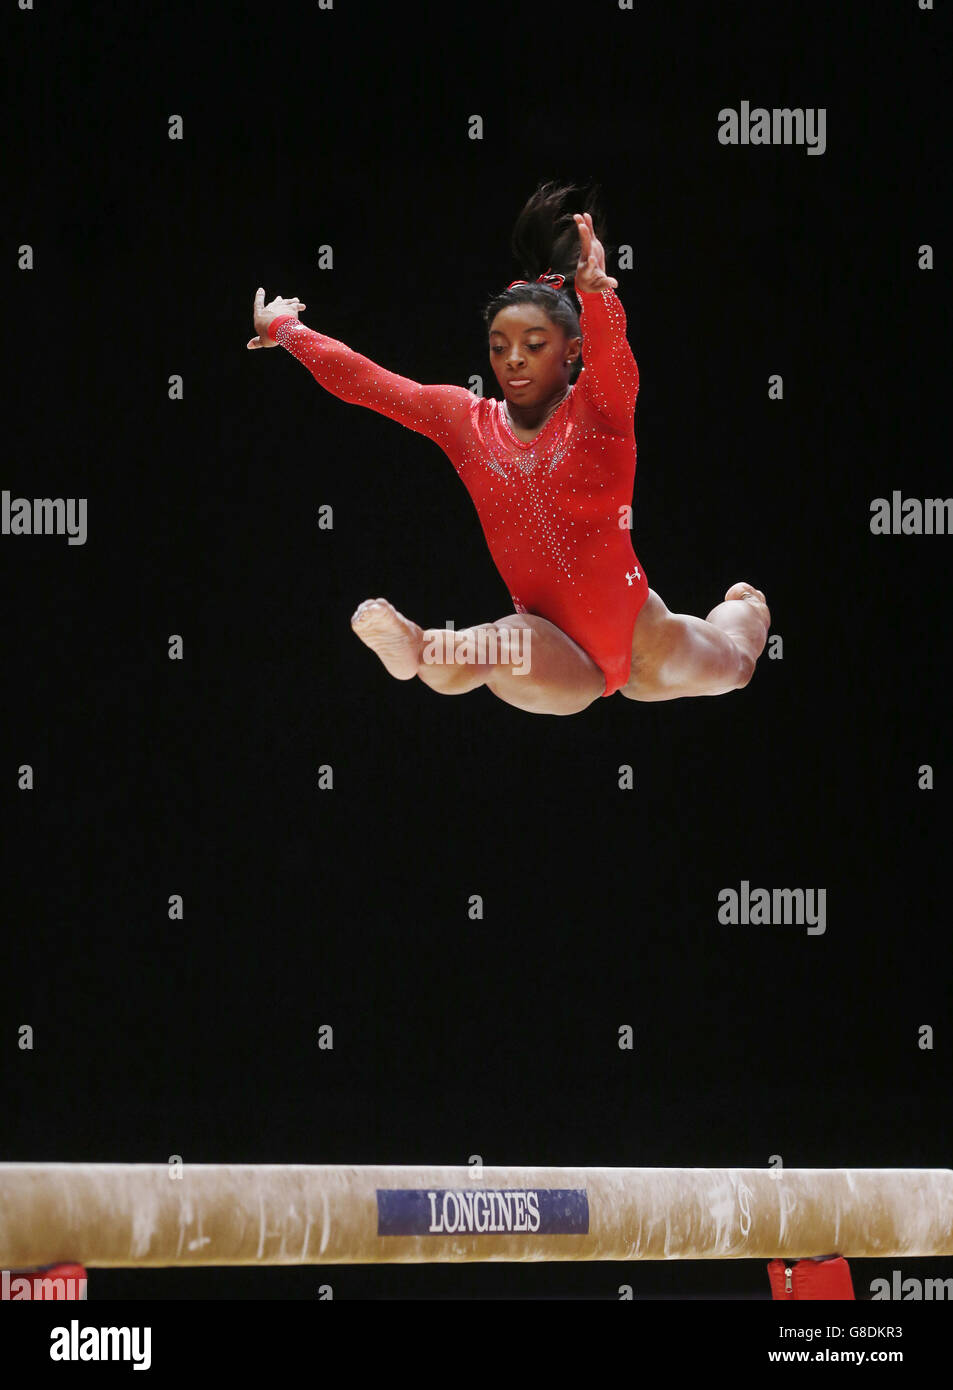 Gymnastik - Weltmeisterschaften 2015 - Tag Sieben - das SSE Hydro. Die US-Amerikanerin Simone Biles tritt am siebten Tag der Weltmeisterschaften im Gymnastik-Bereich 2015 beim SSE Hydro in Glasgow am Balance Beam an. Stockfoto